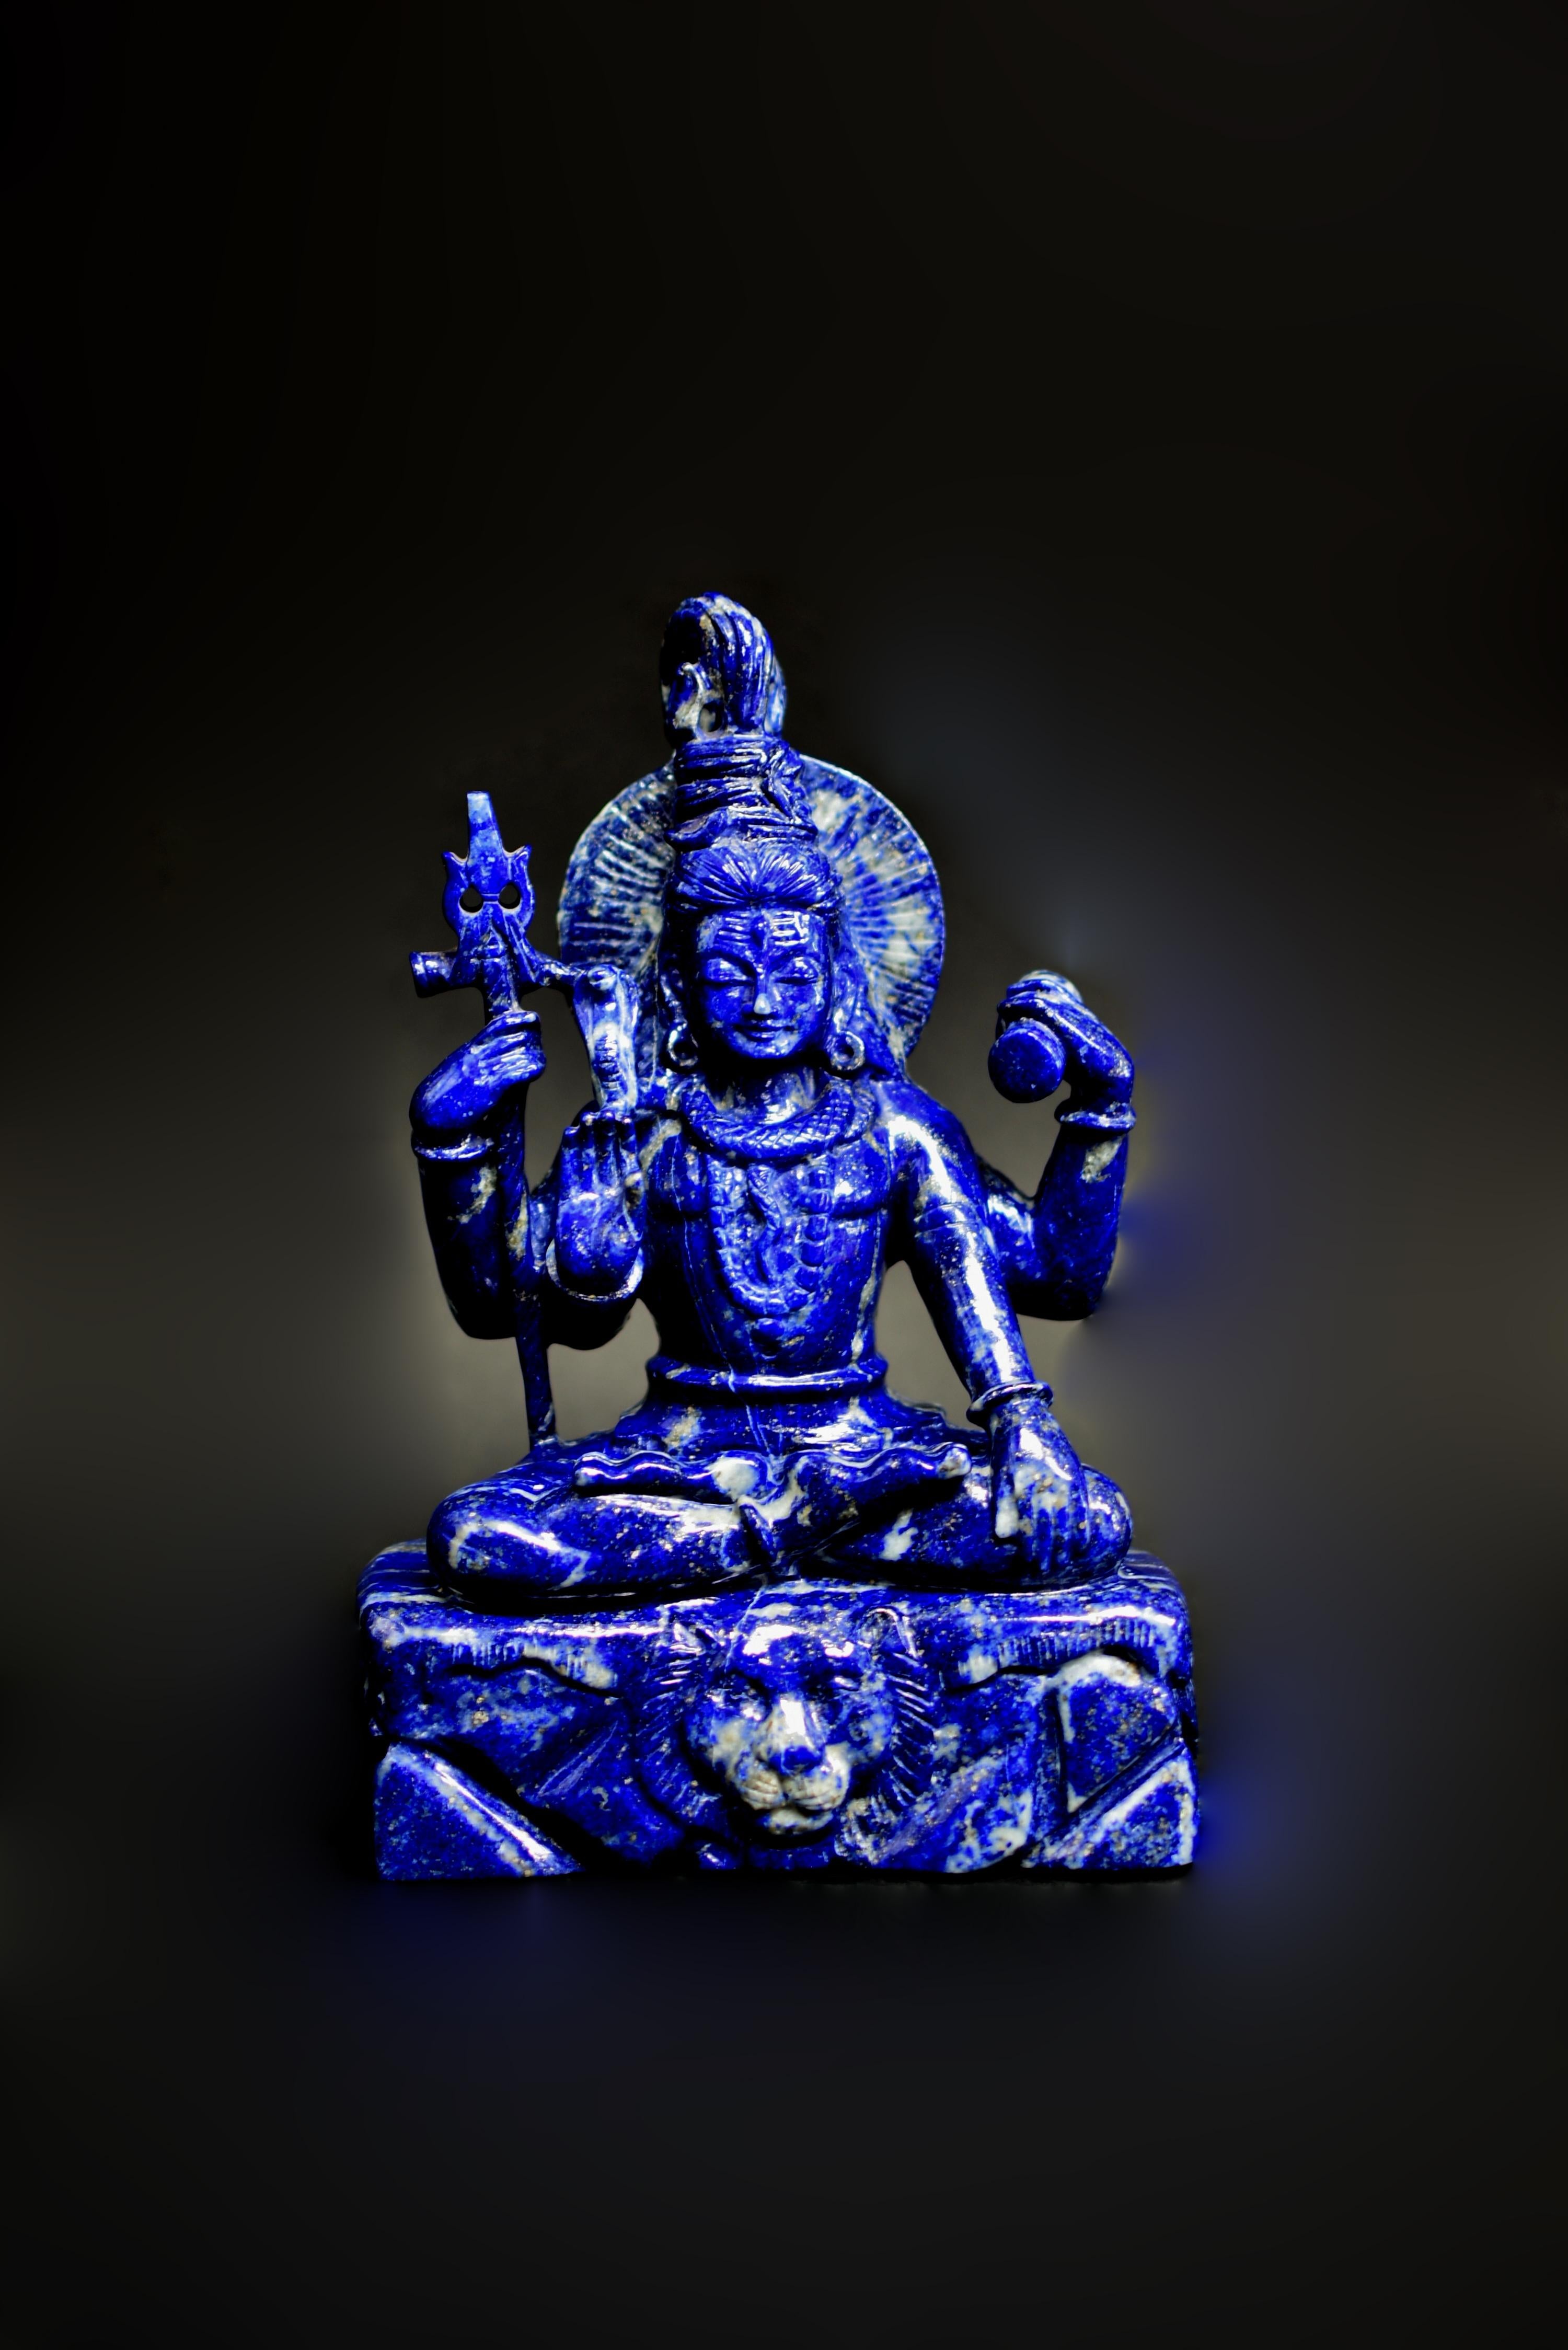 Eine seltene 8,5 lb alle natürlichen Lapislazuli-Statue von Shiva, einer der am meisten verehrten Hindu-Götter. Handgeschnitzt von einem indischen Meisterkünstler, aus dem feinsten Lapislazuli-Edelstein mit dem sattesten, brillantesten Kobaltblau.